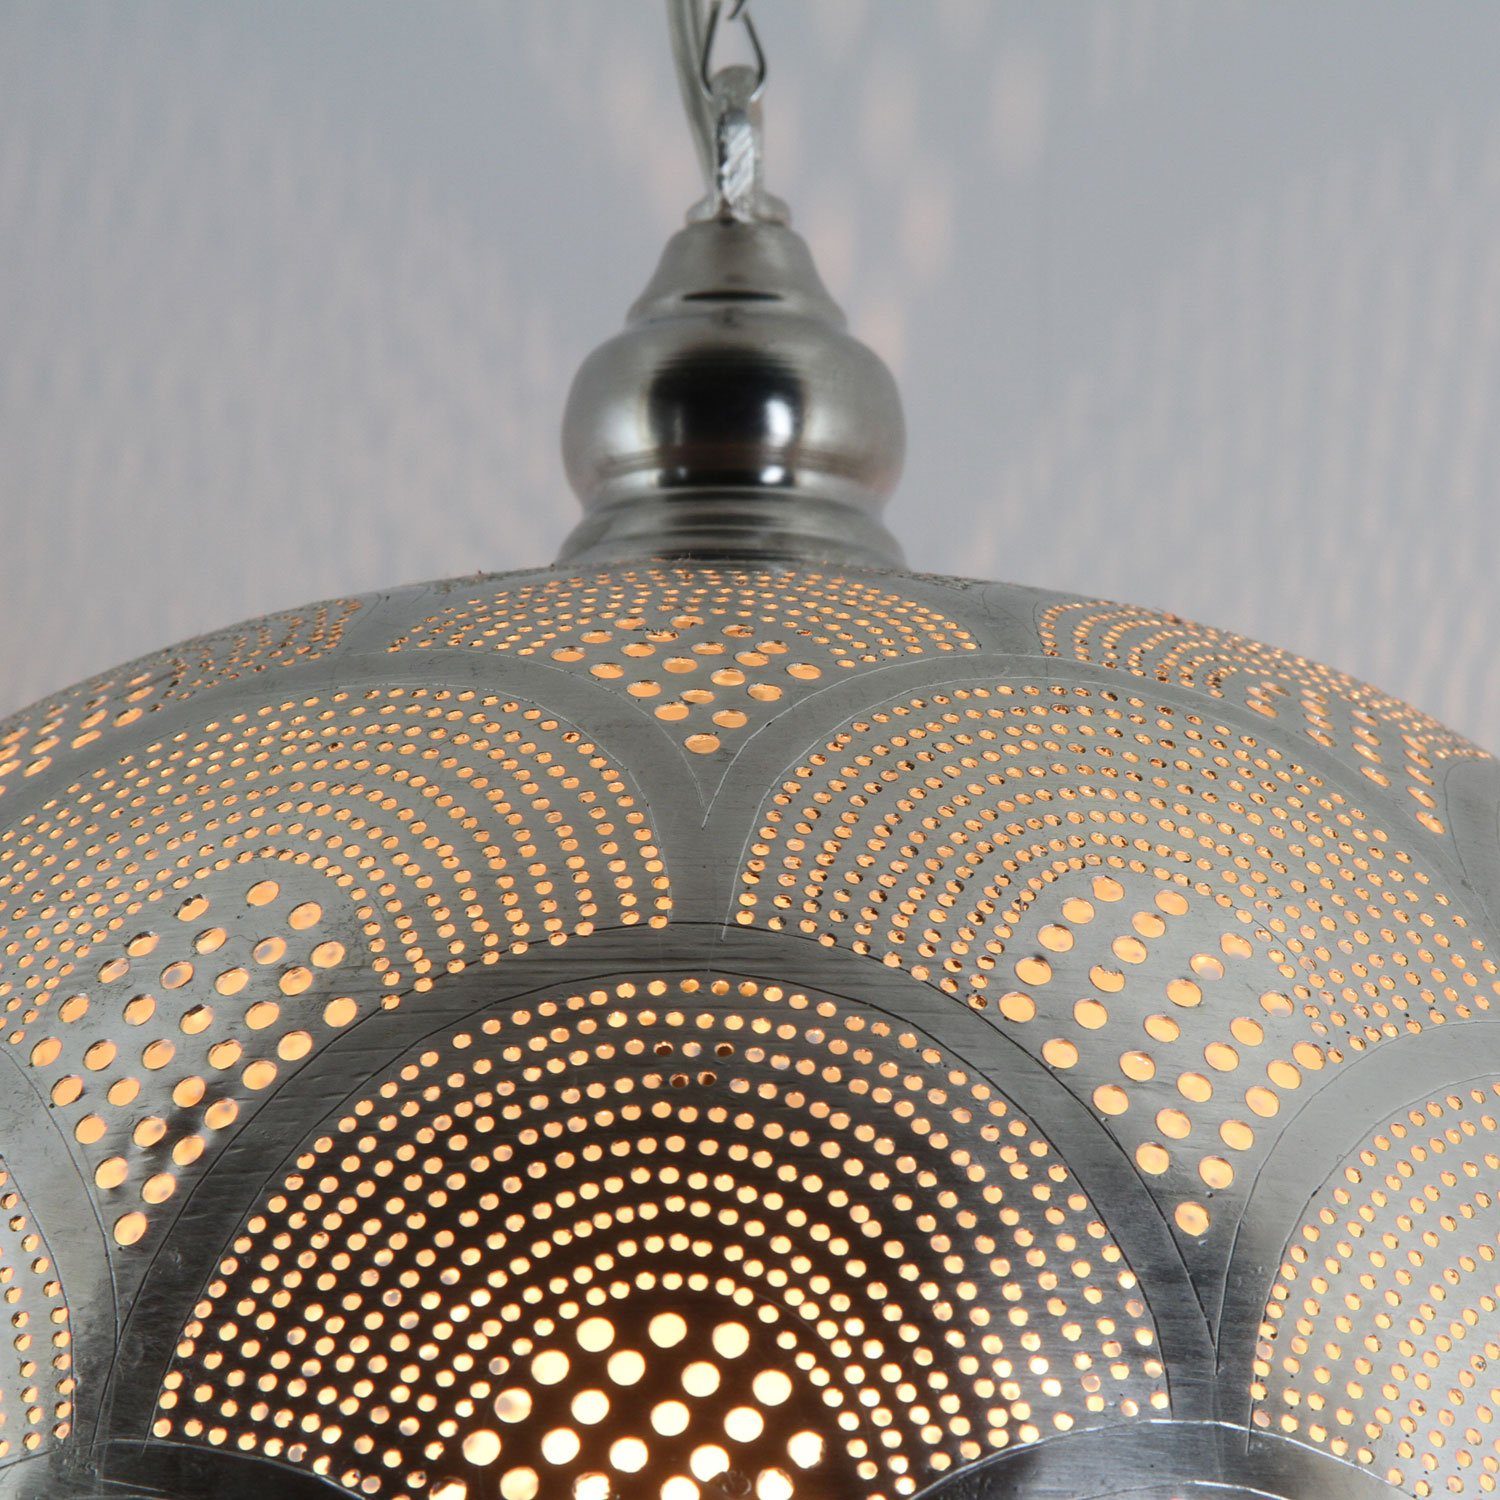 Toufaha Samak marokkanische Orientalische Hängeleuchte D30 EL2024 Lampe ohne Leuchtmittel, Silber Messing, Casa Hängelampe, aus Prachtvolle Moro Pendelleuchte,